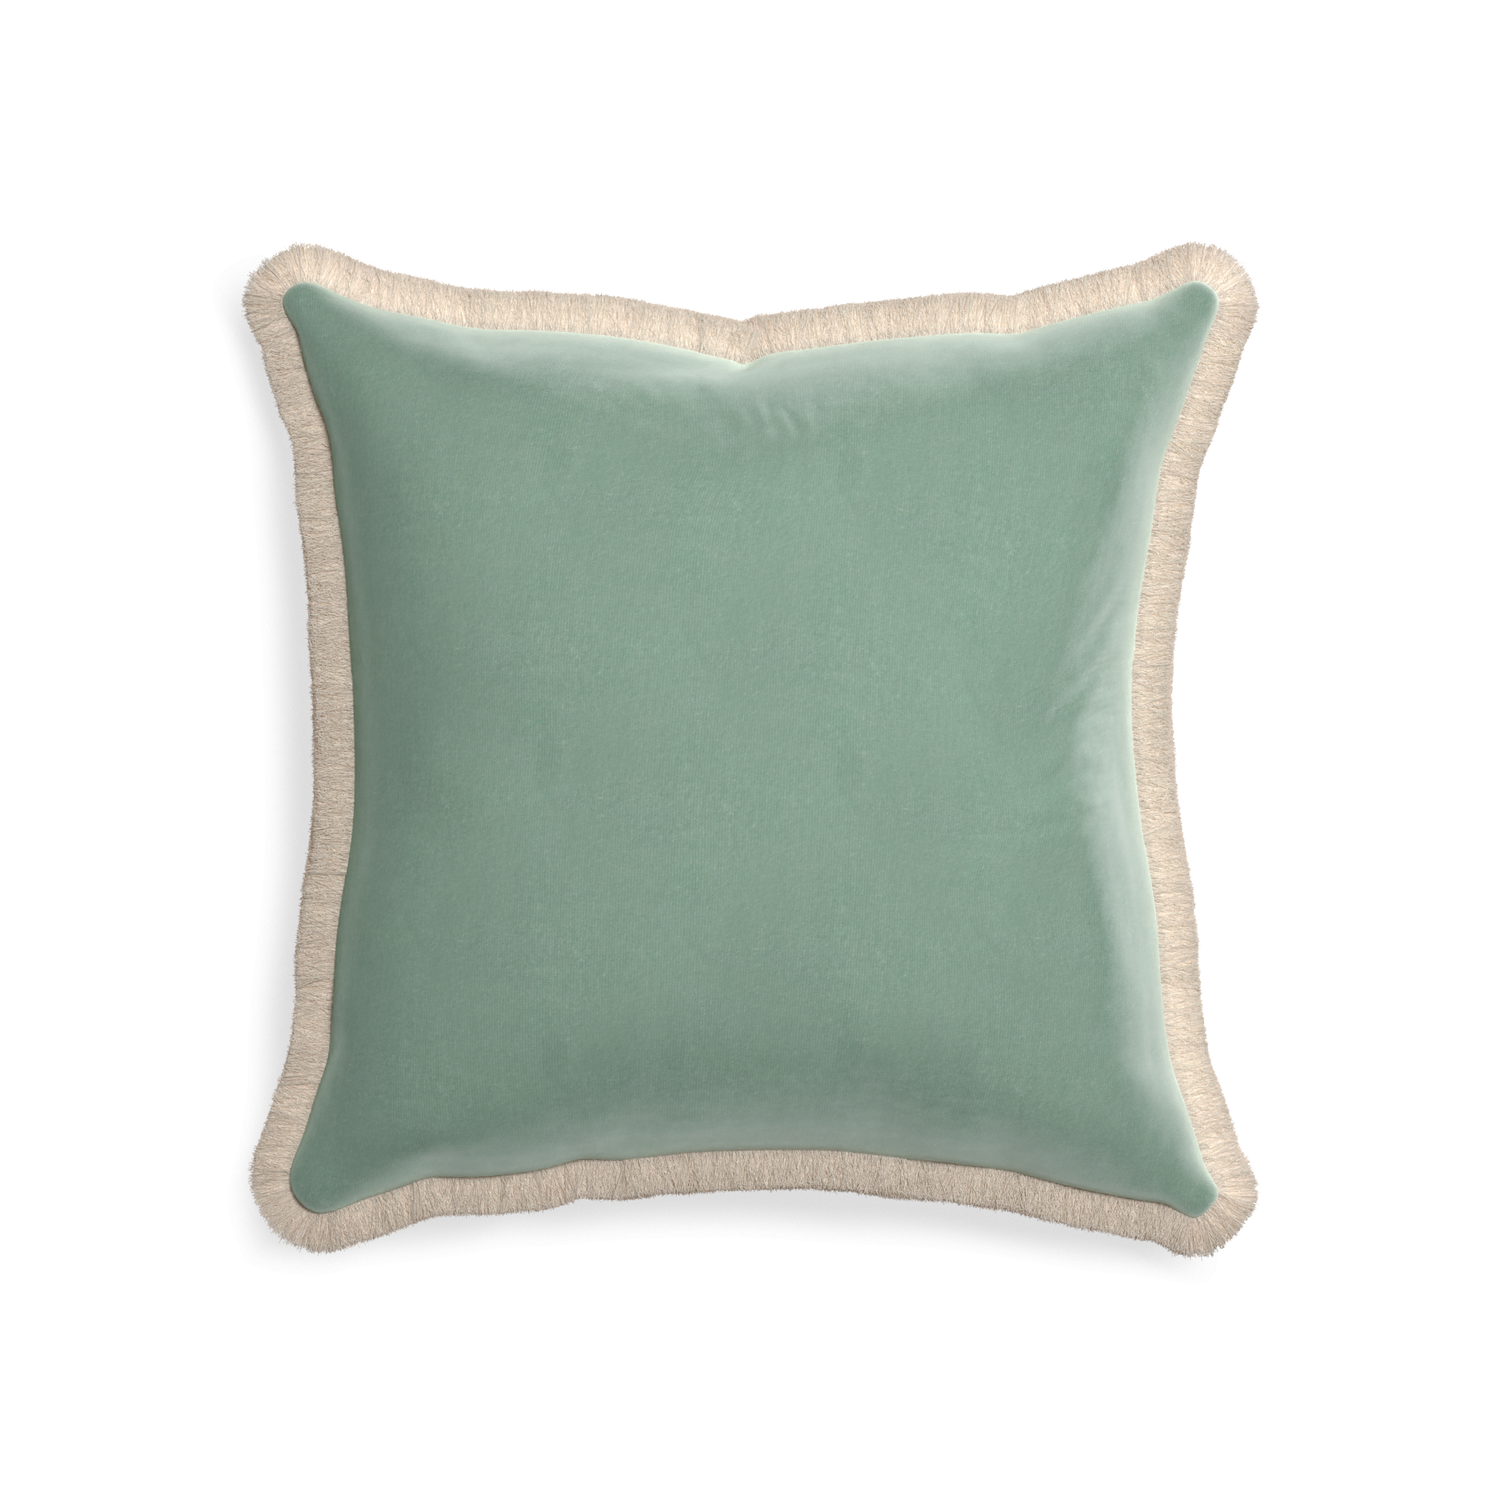 square blue green velvet pillow with cream fringe